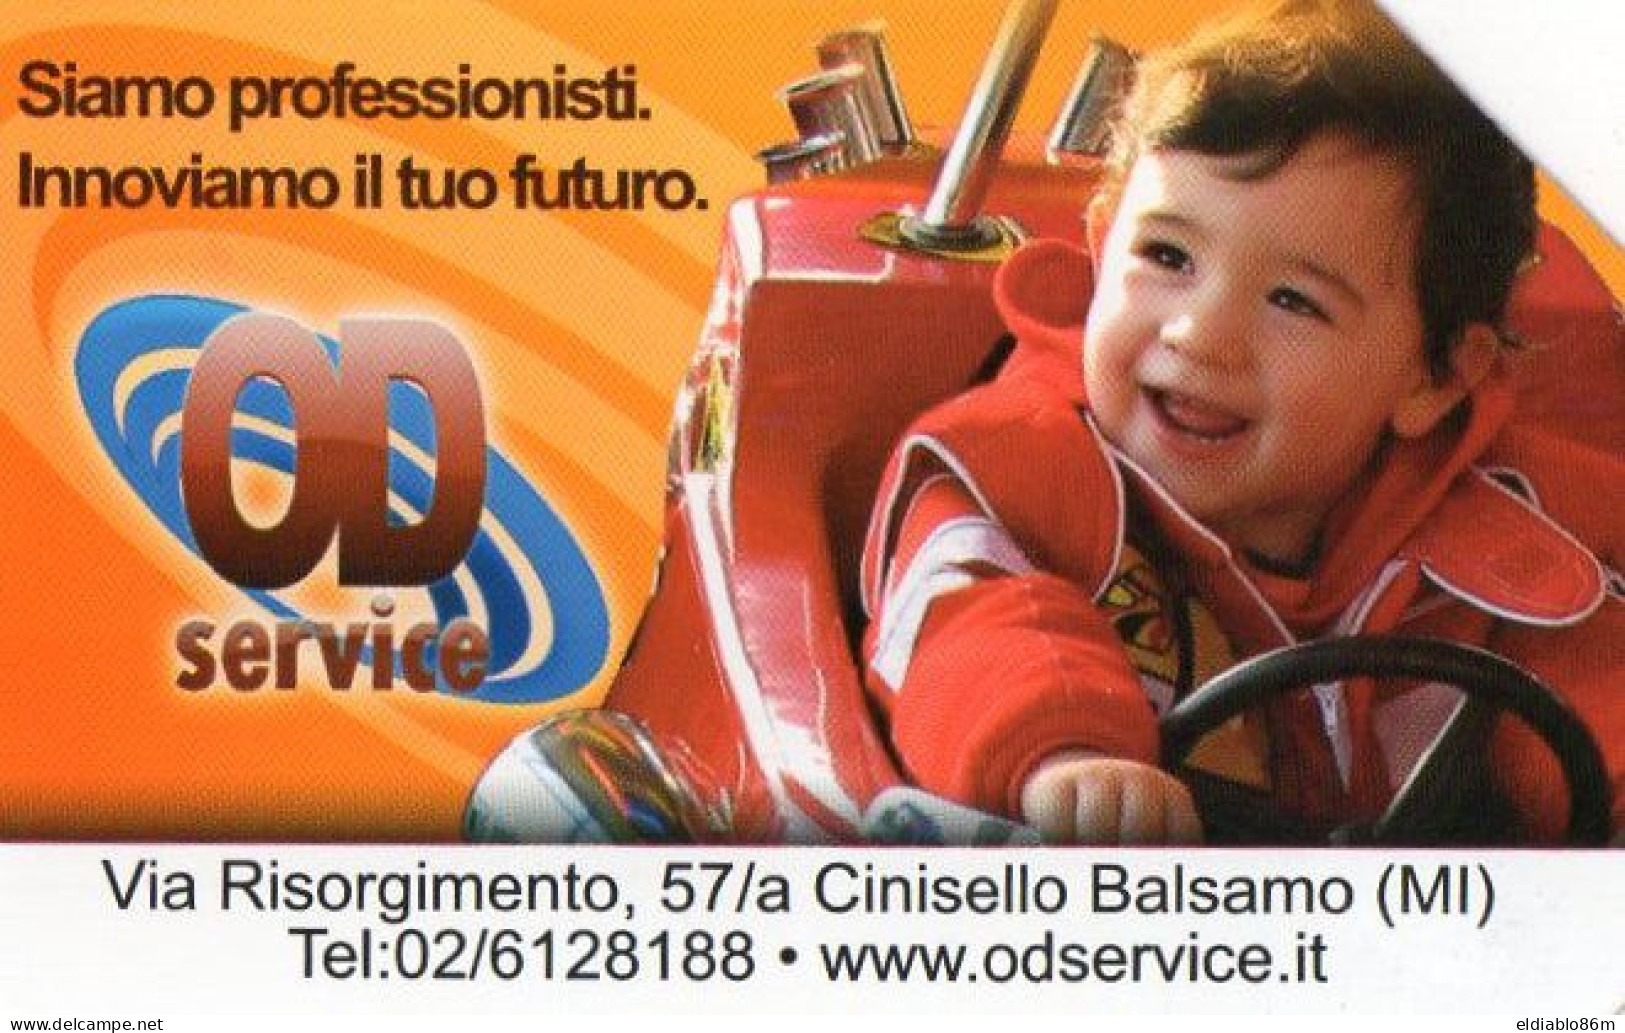 ITALY - URMET - G.833 Ex2331 - O.D. SERVICE - Publiques Thématiques